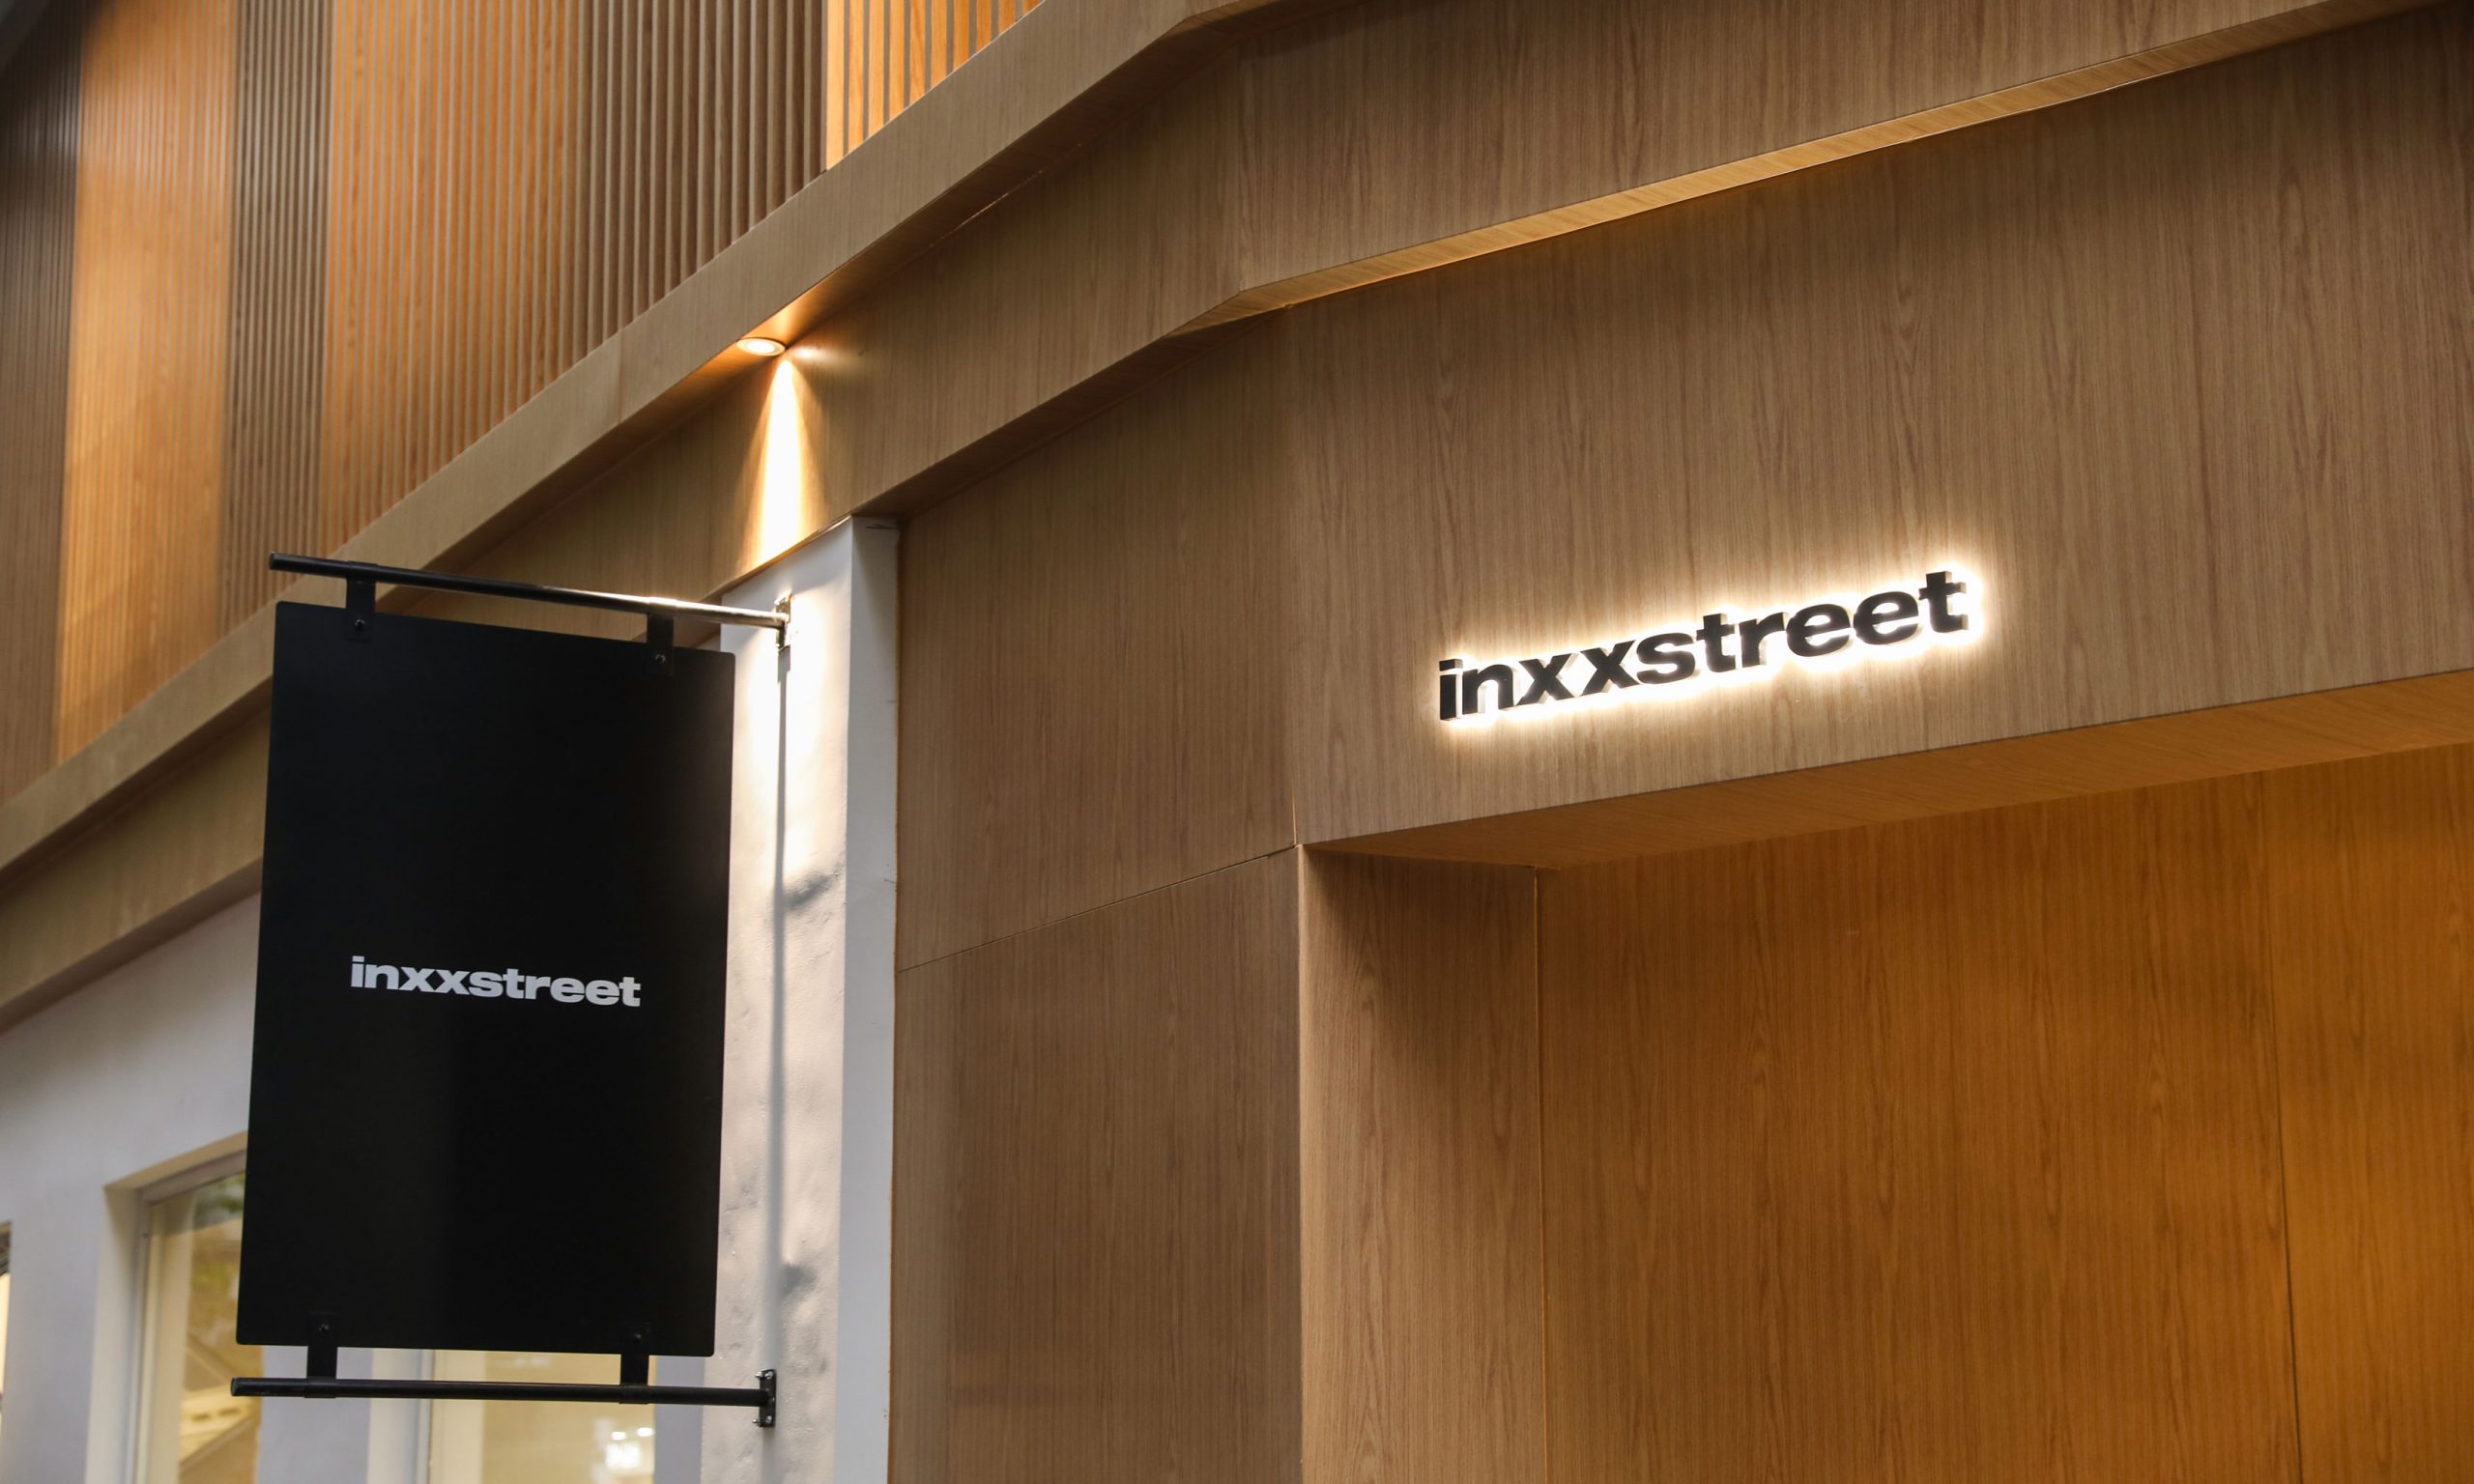 inxxstreet 全国首家旗舰店于杭州开业